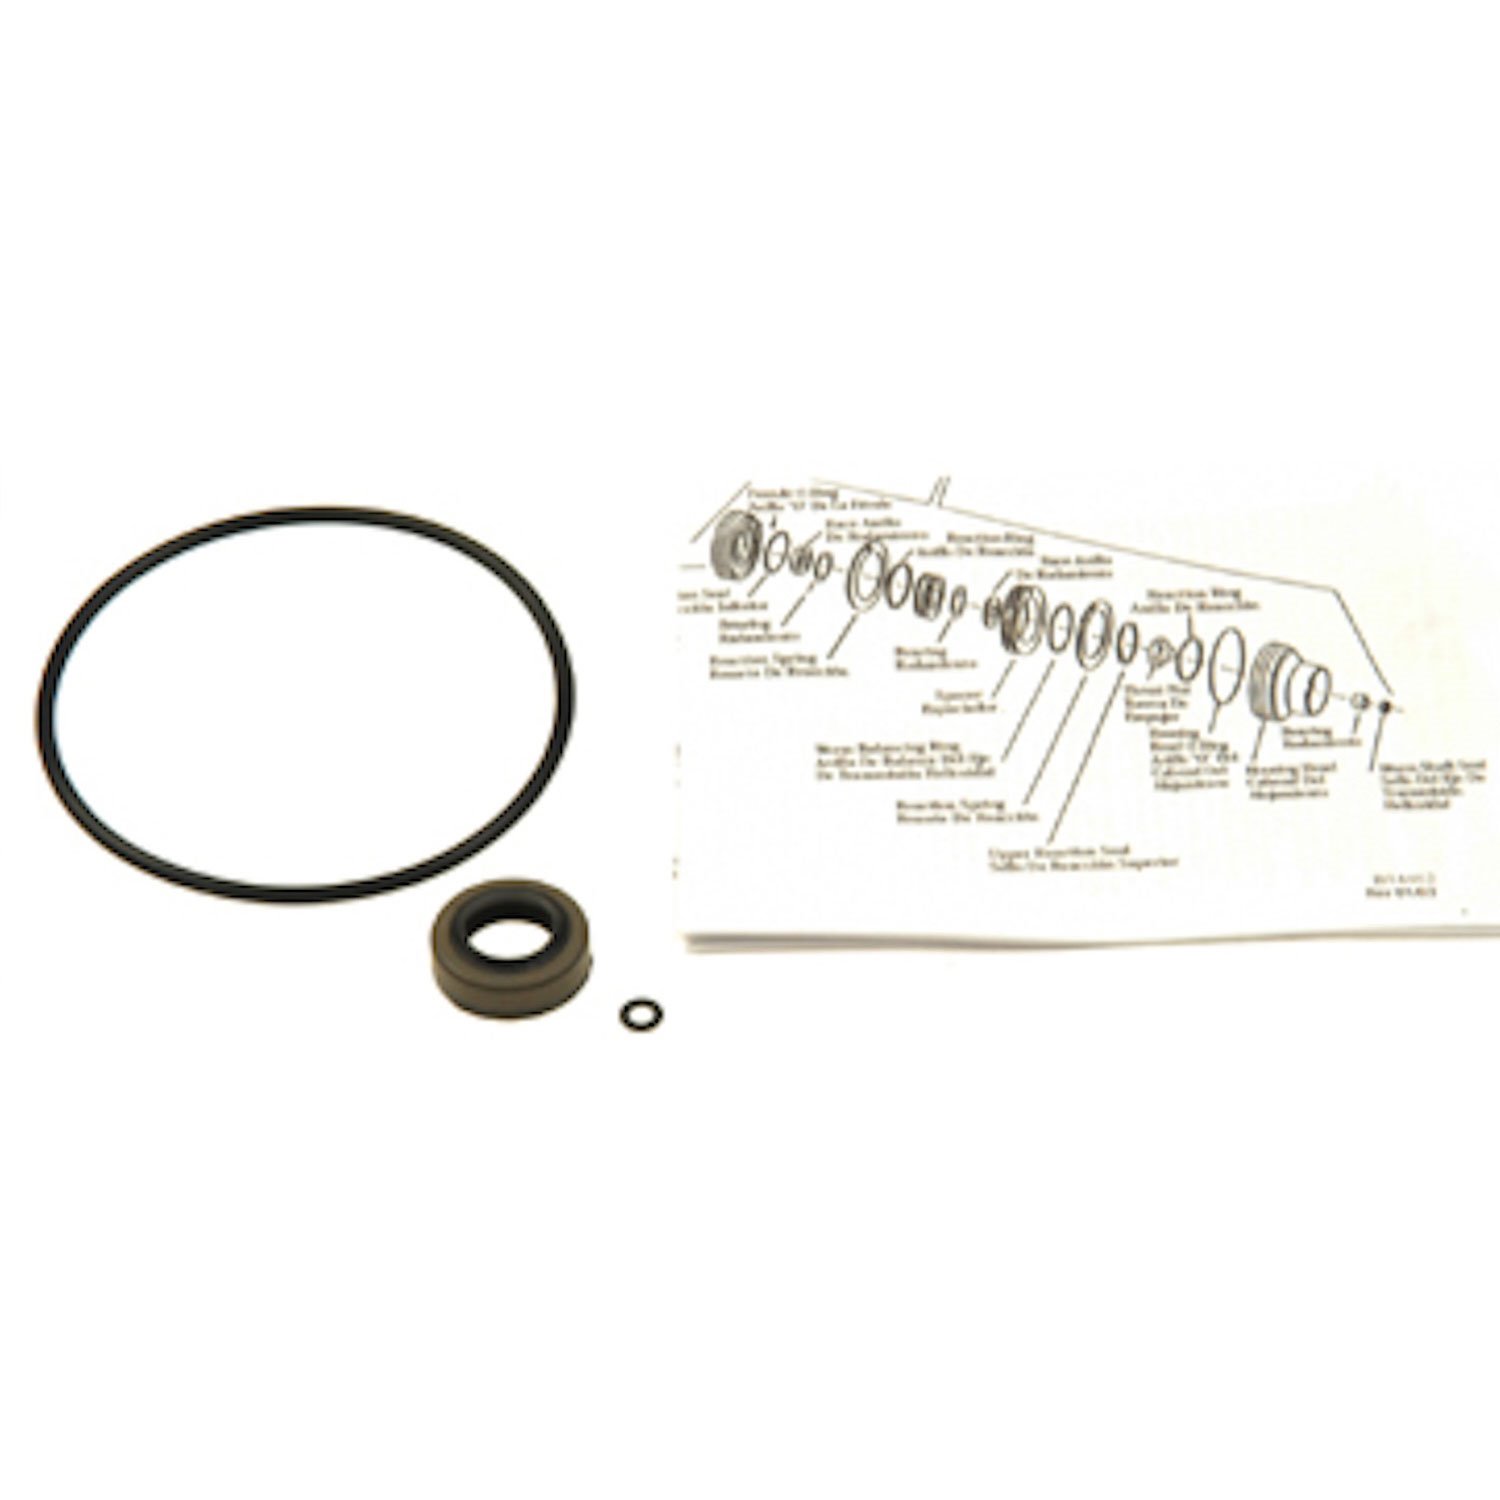 Power Steering Repair Kit Standard Gear Input Shaft Seal Kit